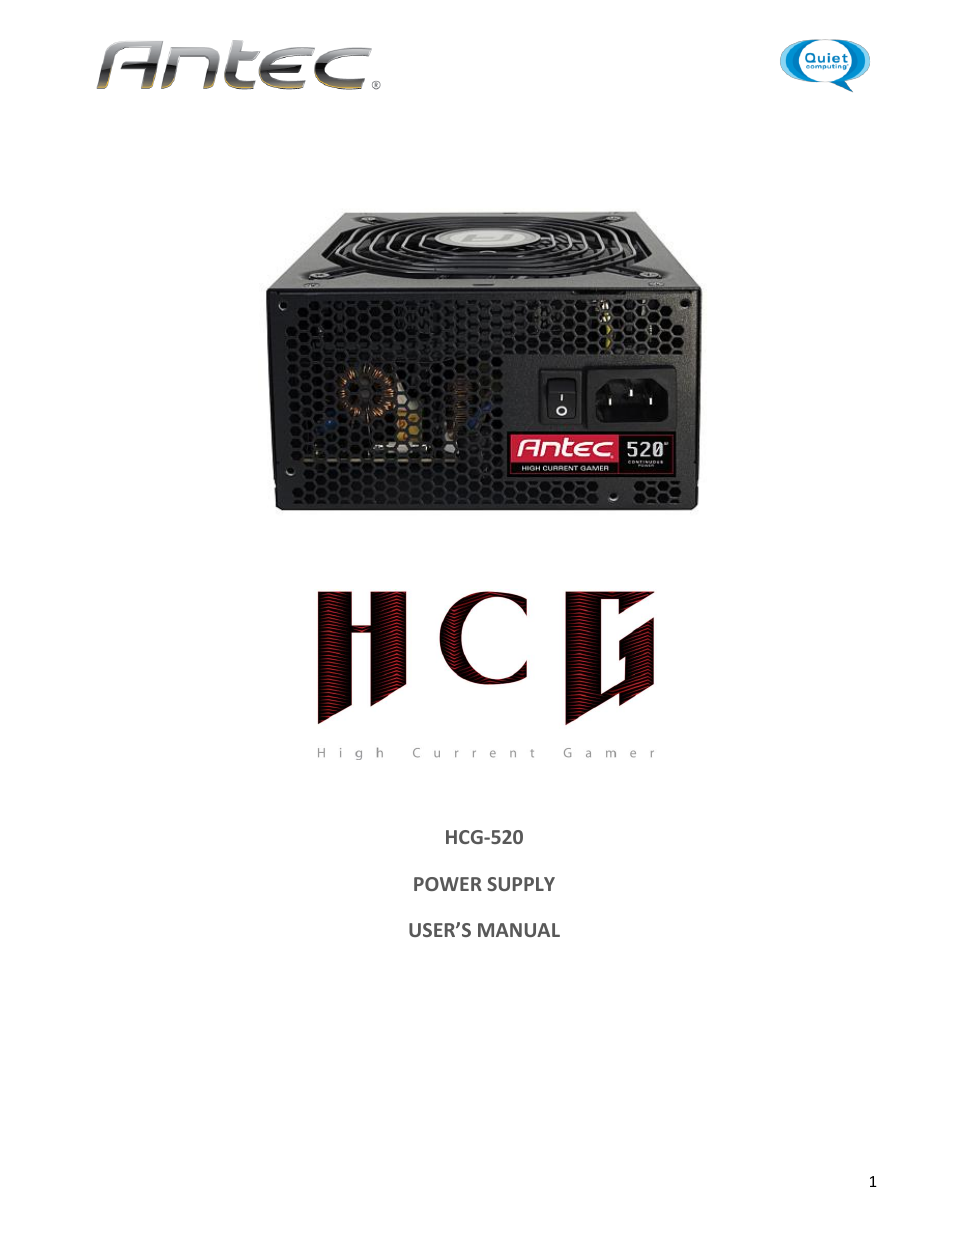 HCG-520